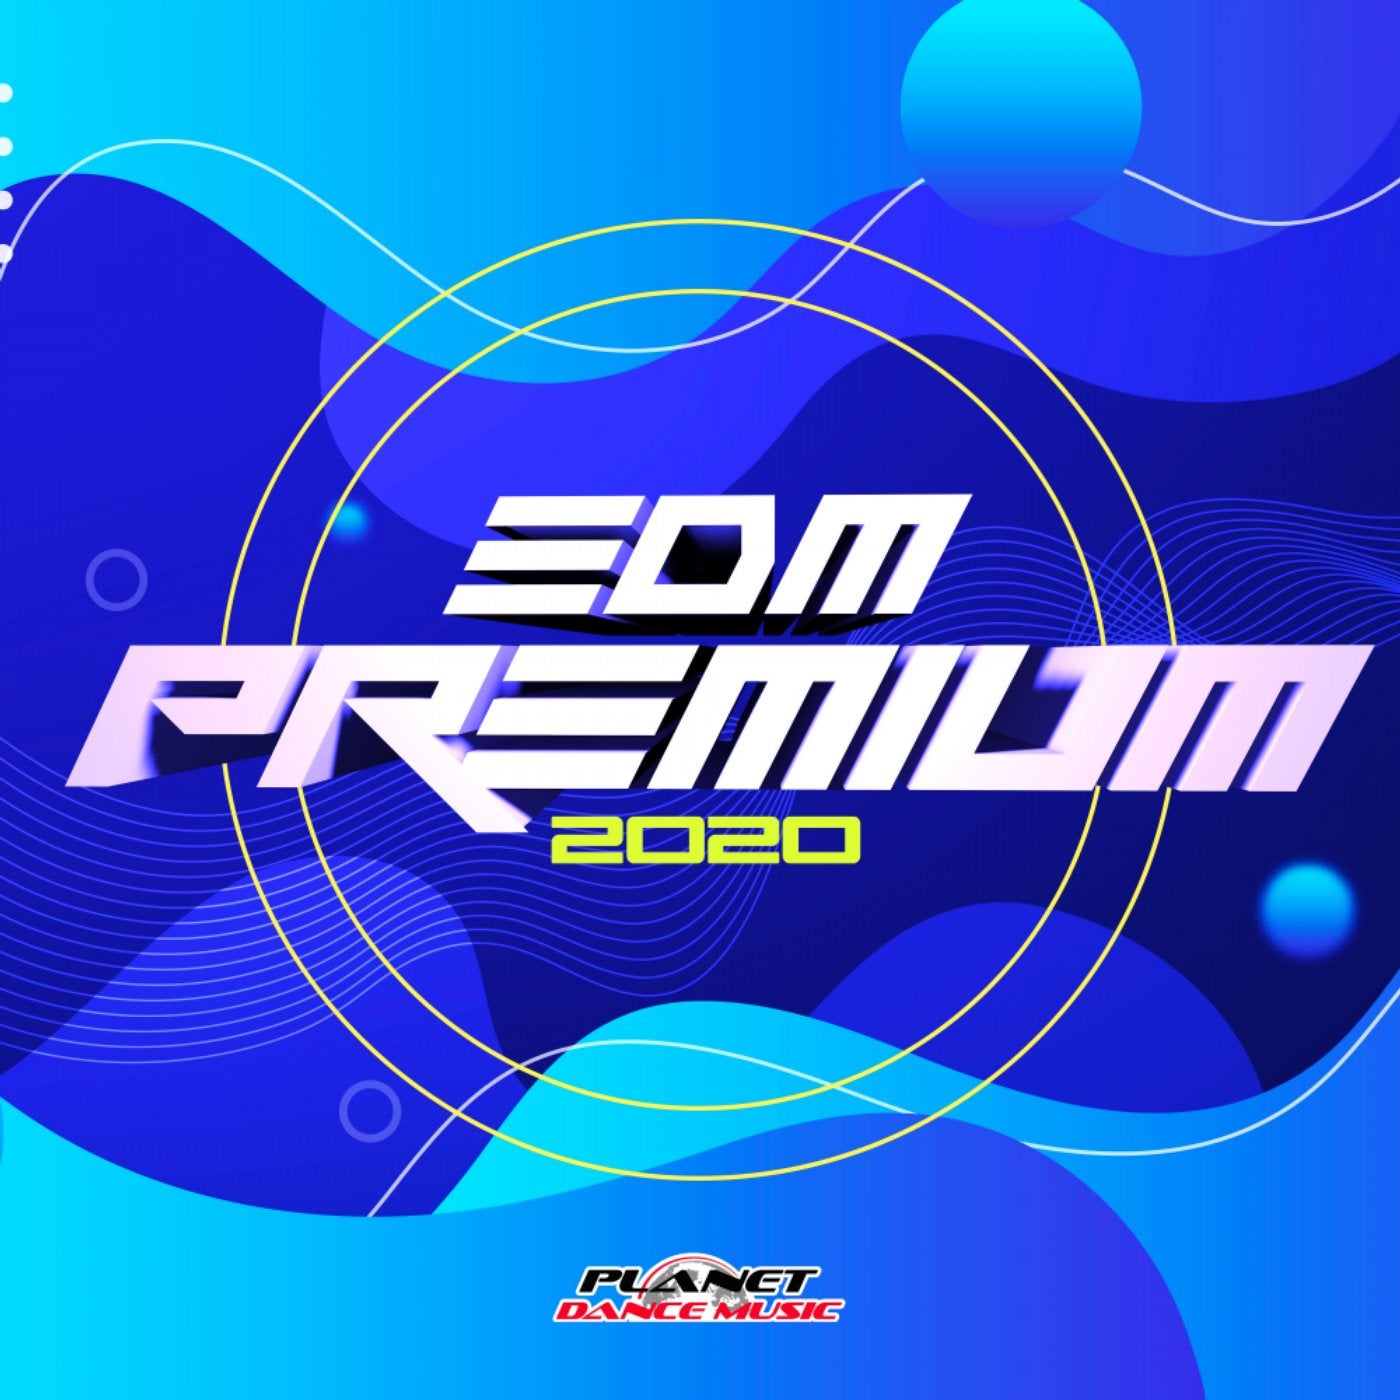 EDM Premium 2020